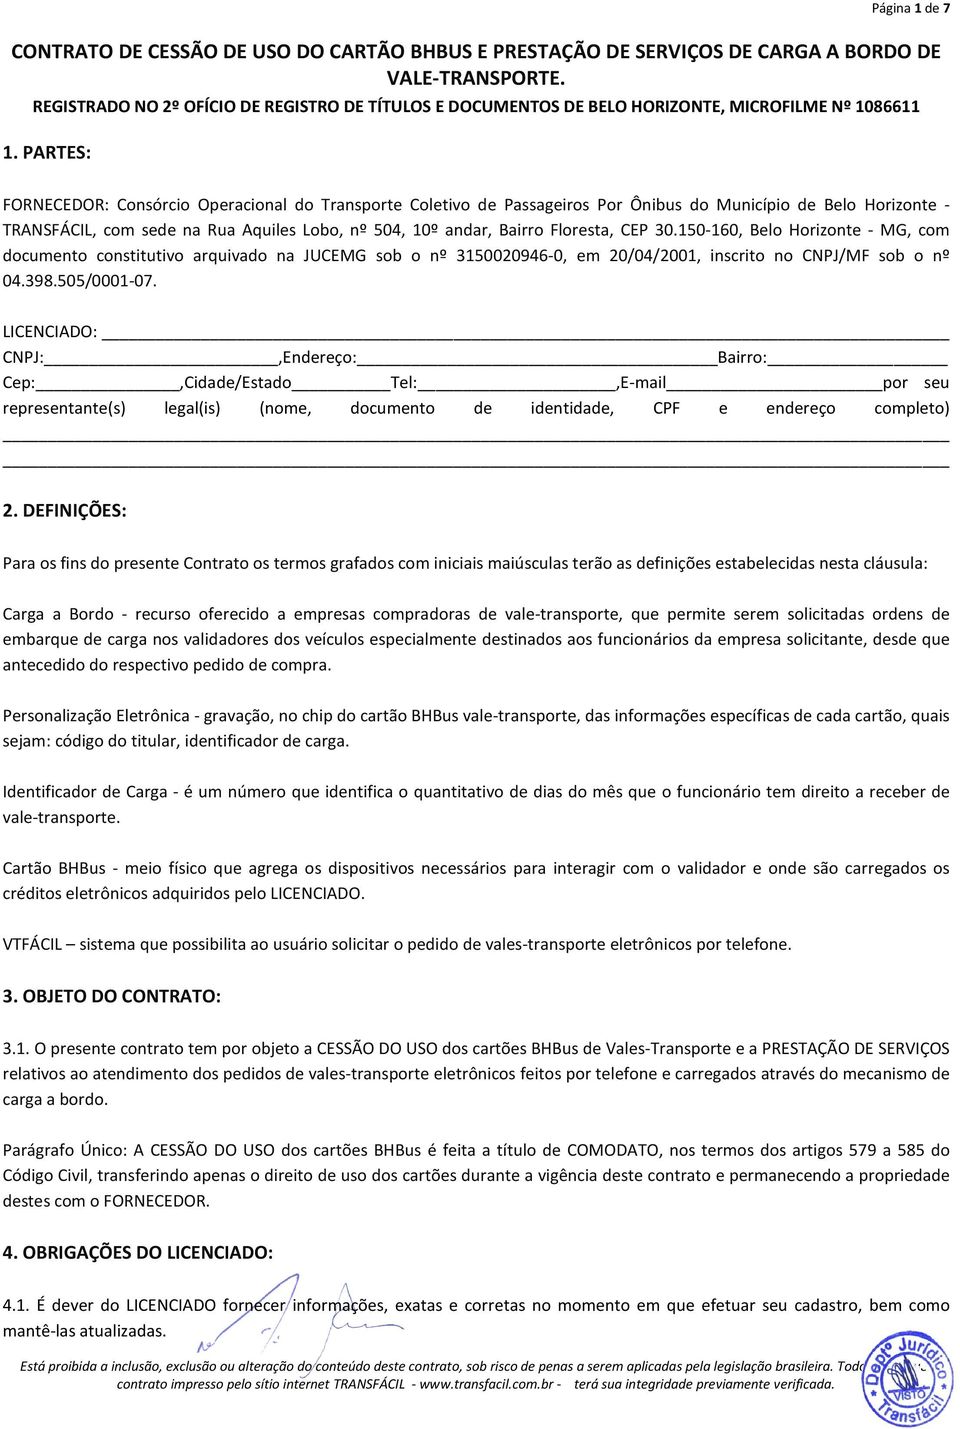 PARTES: FORNECEDOR: Consórcio Operacional do Transporte Coletivo de Passageiros Por Ônibus do Município de Belo Horizonte - TRANSFÁCIL, com sede na Rua Aquiles Lobo, nº 504, 10º andar, Bairro